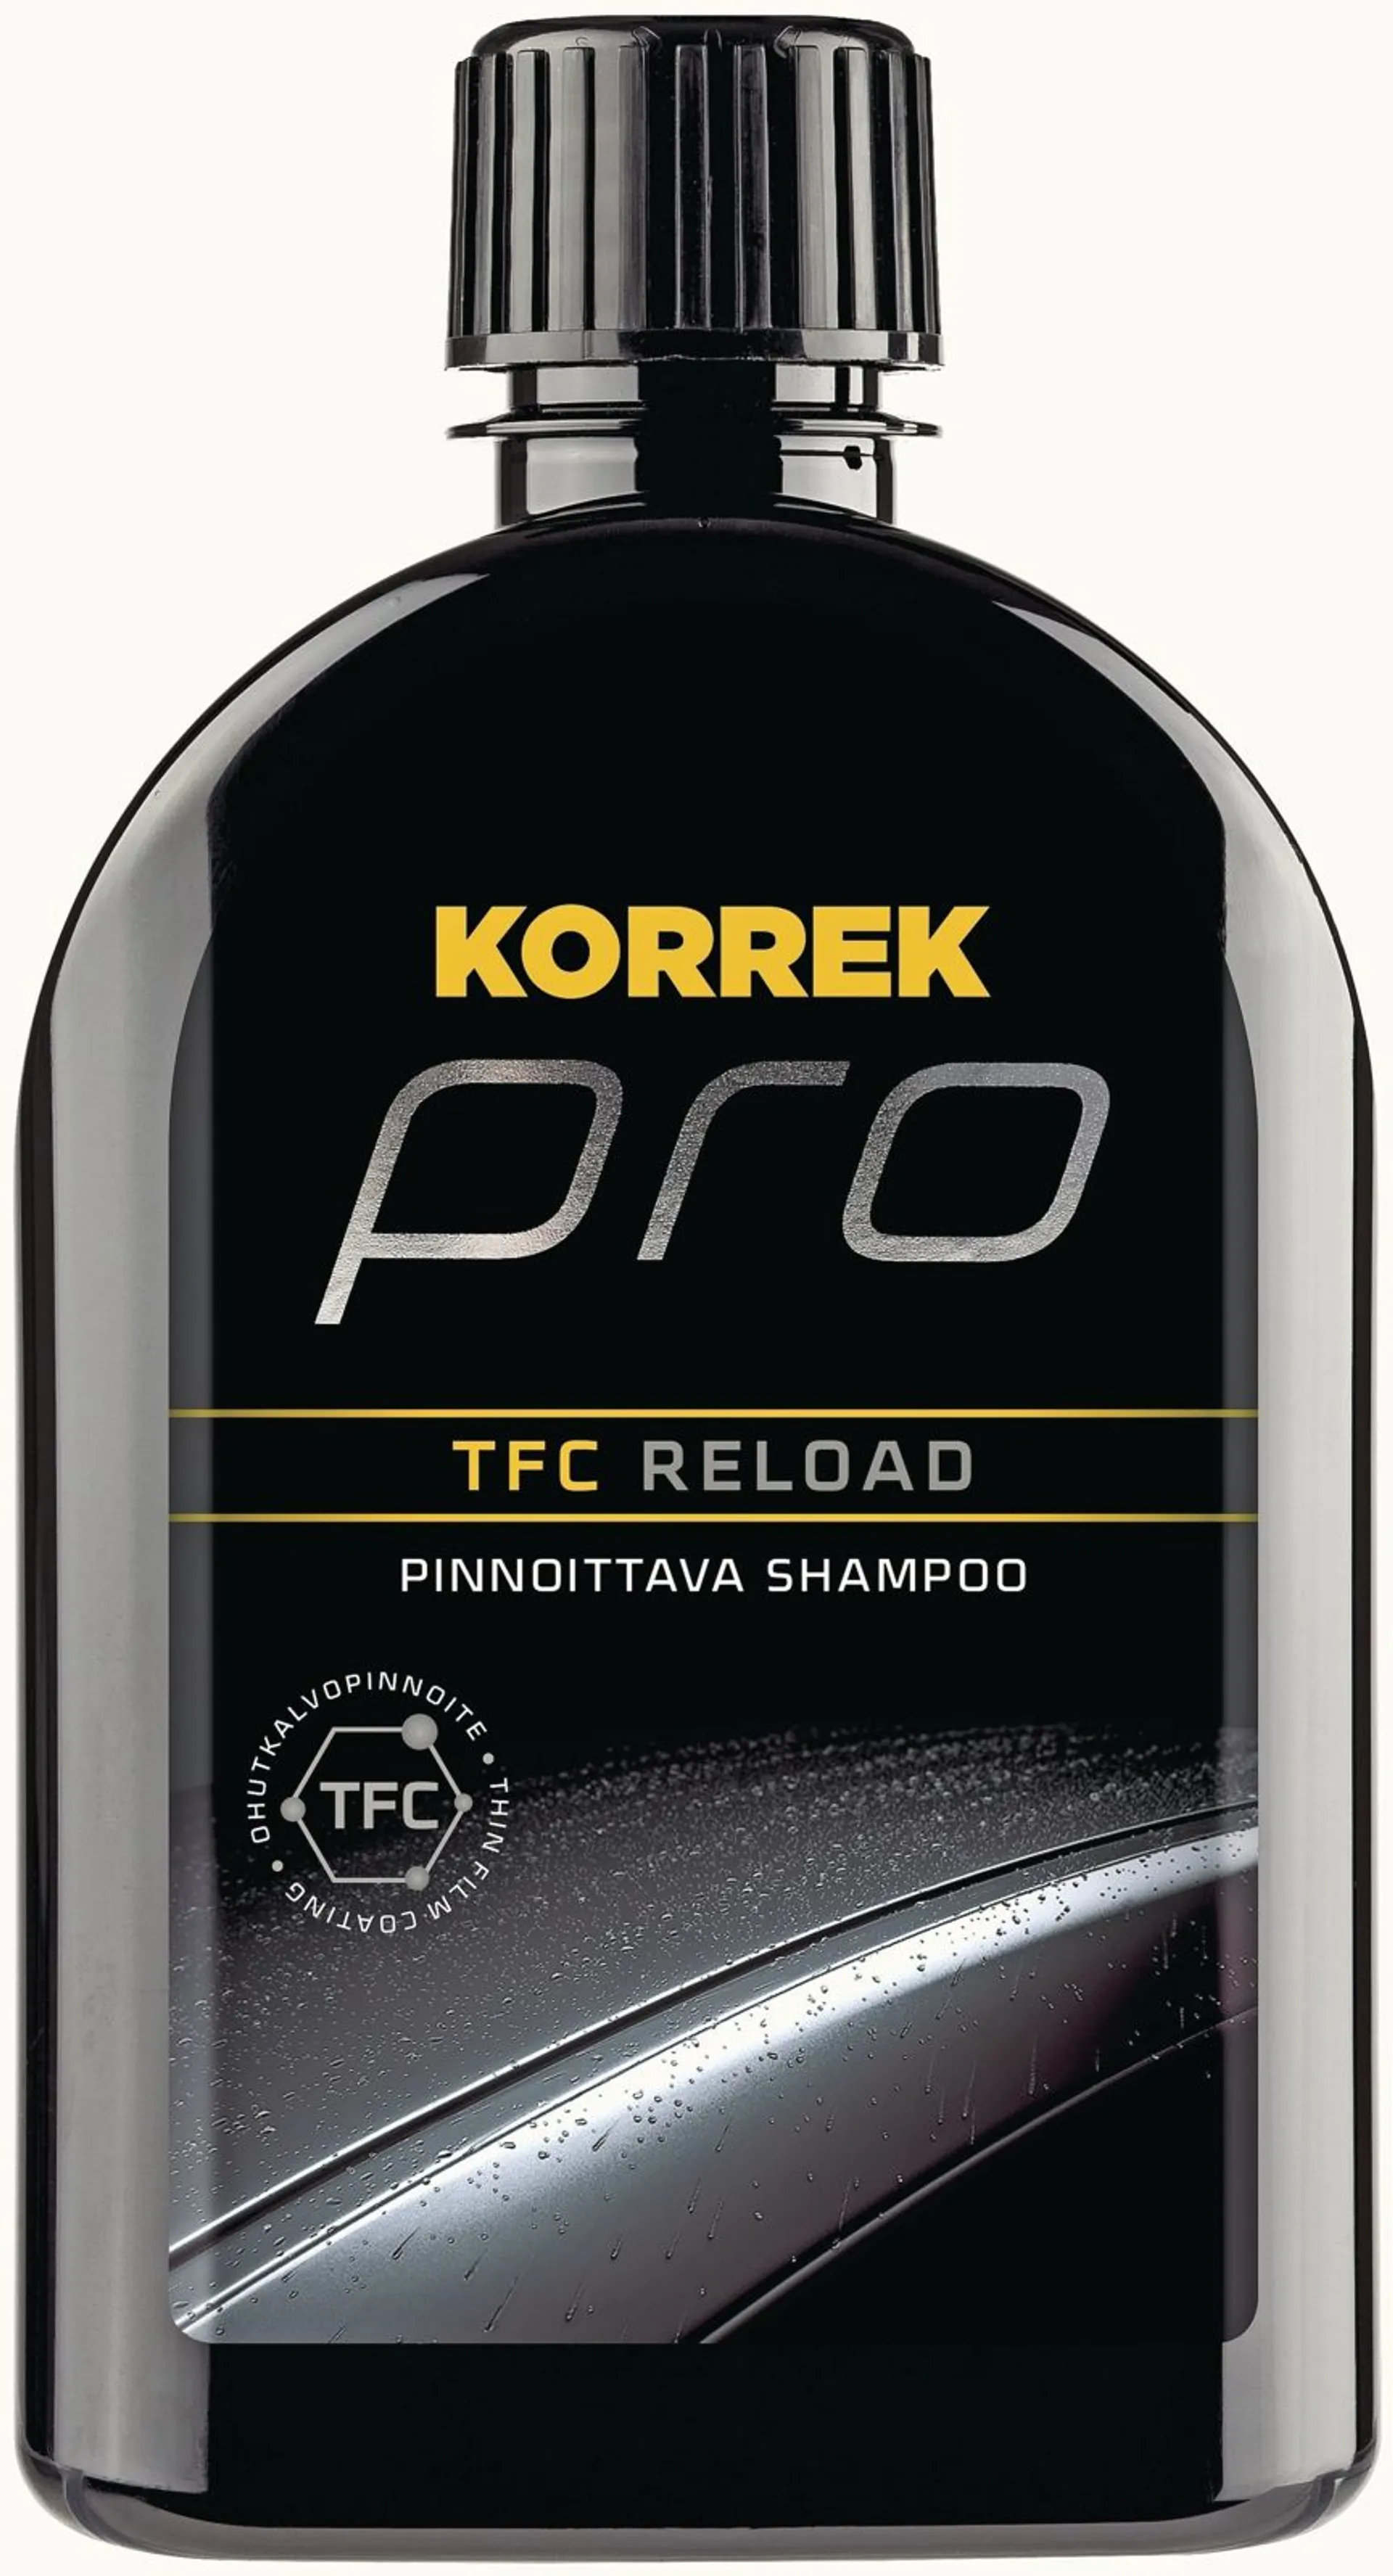 KORREK Pro TFC Reload shampoo 350 ml